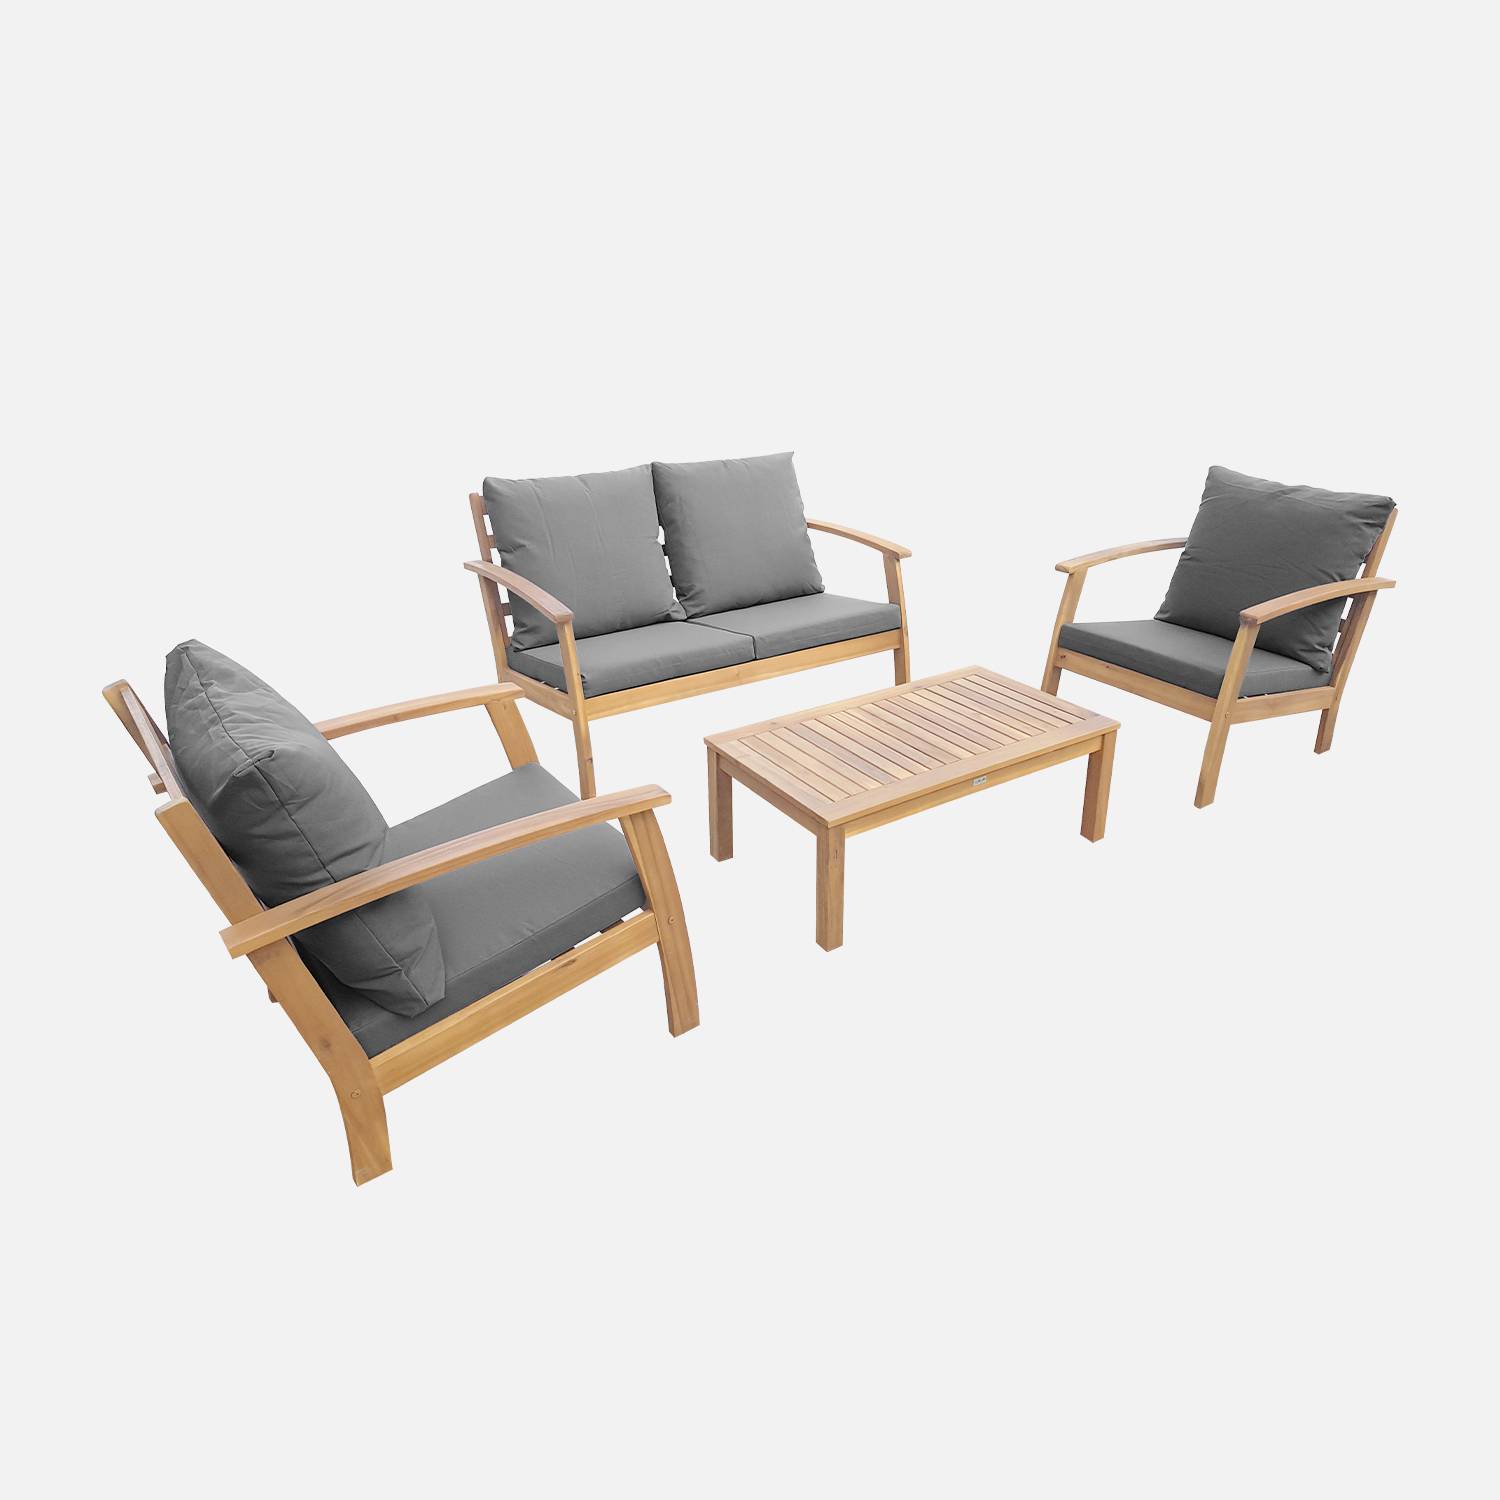 Salon de jardin en bois 4 places - Ushuaïa - Coussins Gris, canapé, fauteuils et table basse en acacia, design Photo2